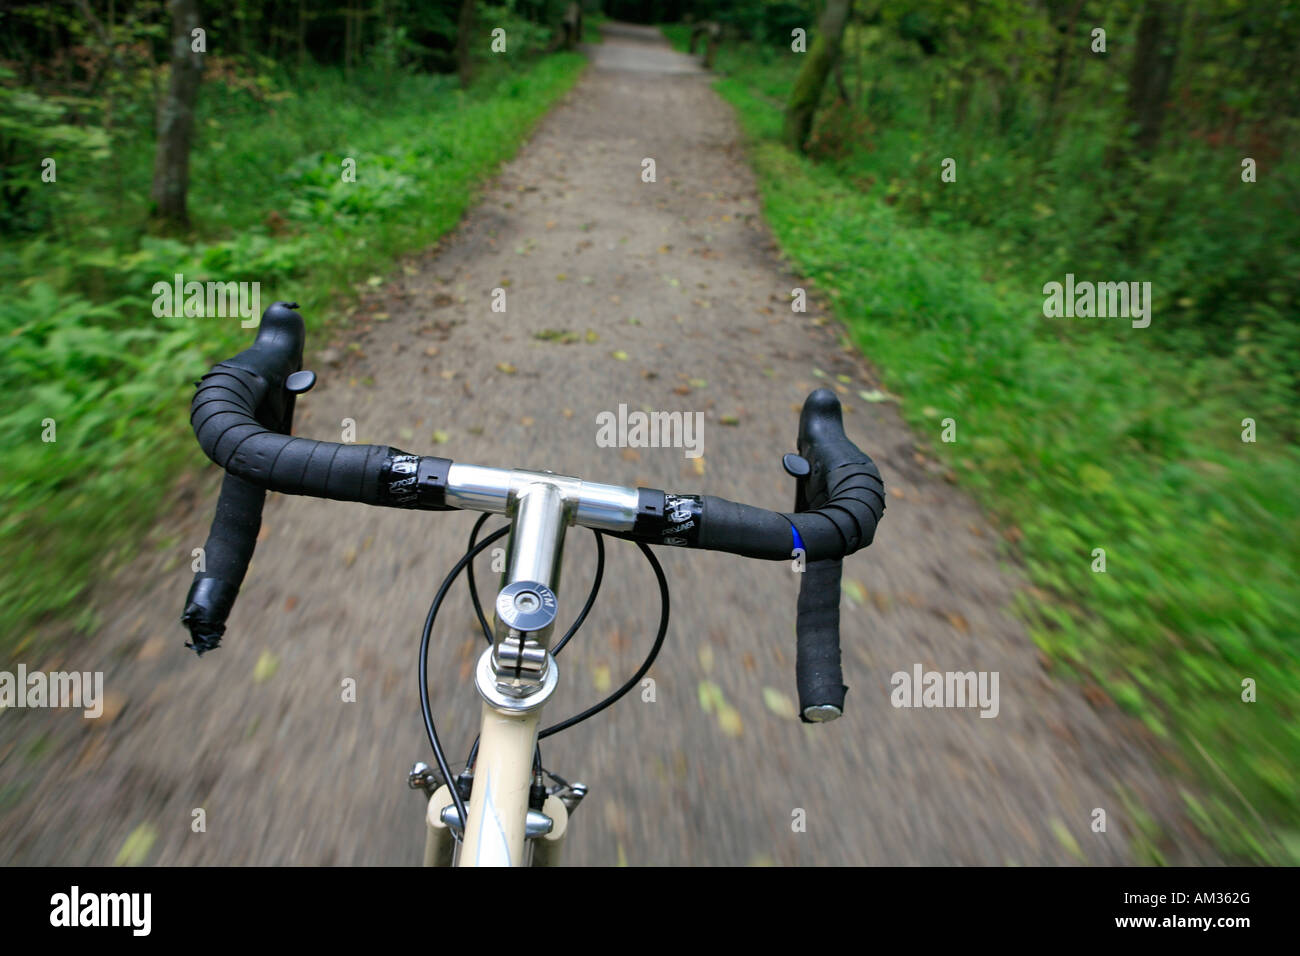 Vélo de course sur une piste forestière, Wohldorfer Wald, Hambourg, Allemagne Banque D'Images